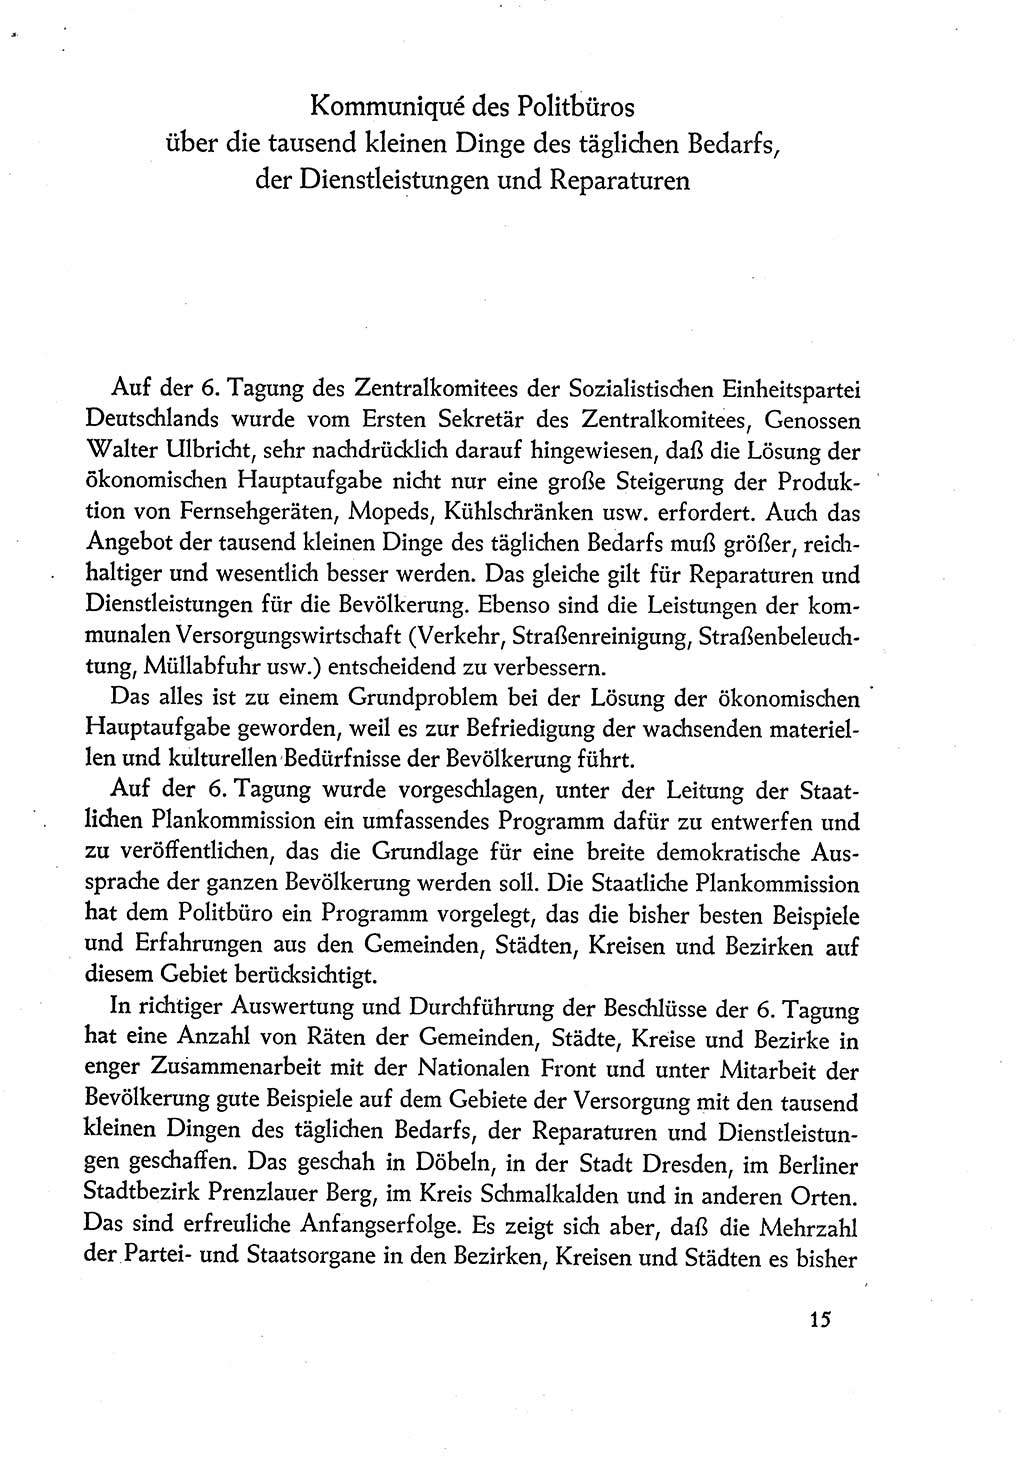 Dokumente der Sozialistischen Einheitspartei Deutschlands (SED) [Deutsche Demokratische Republik (DDR)] 1960-1961, Seite 15 (Dok. SED DDR 1960-1961, S. 15)